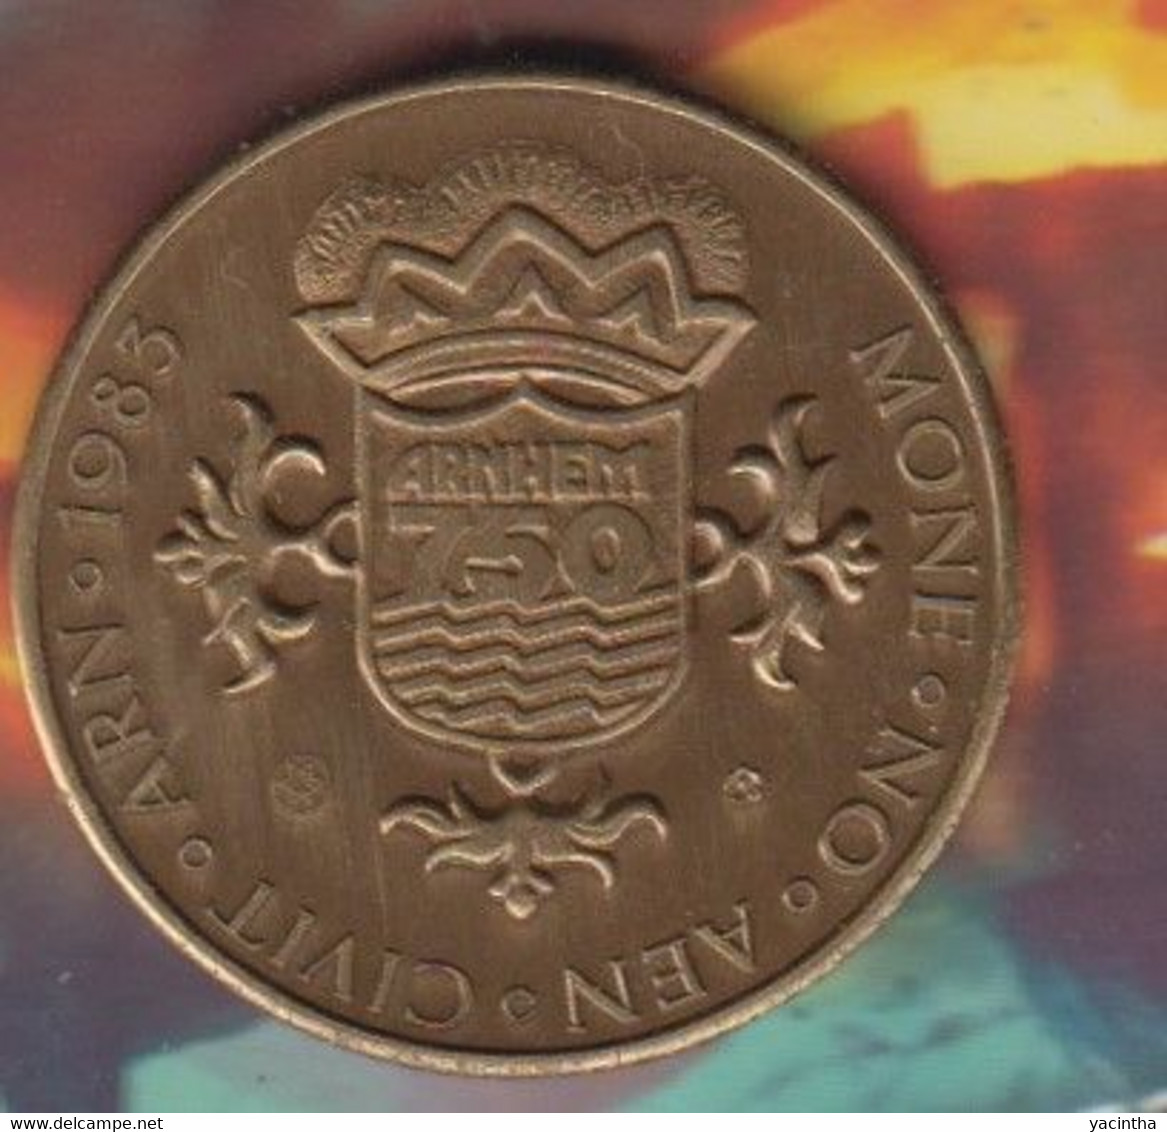 Arnhem  750 Jaar   1233 - 1983  Gele Rijders    (1010) - Souvenir-Medaille (elongated Coins)